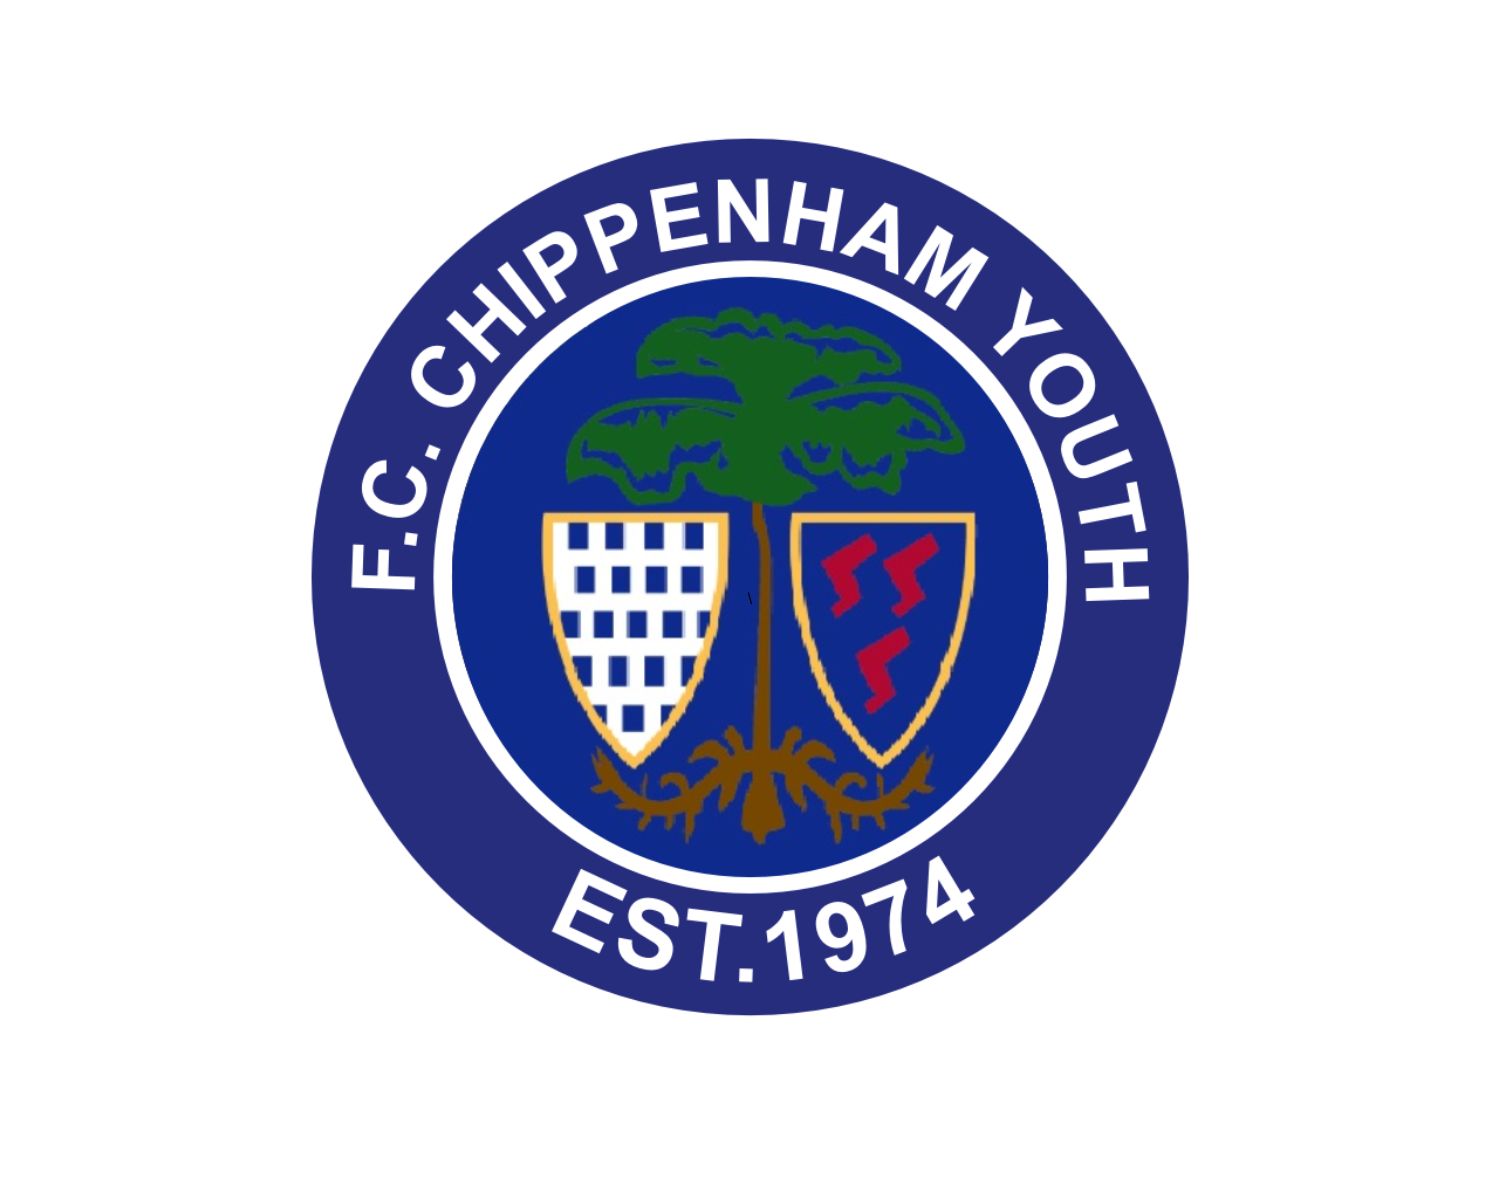 chippenham-town-fc-22-football-club-facts